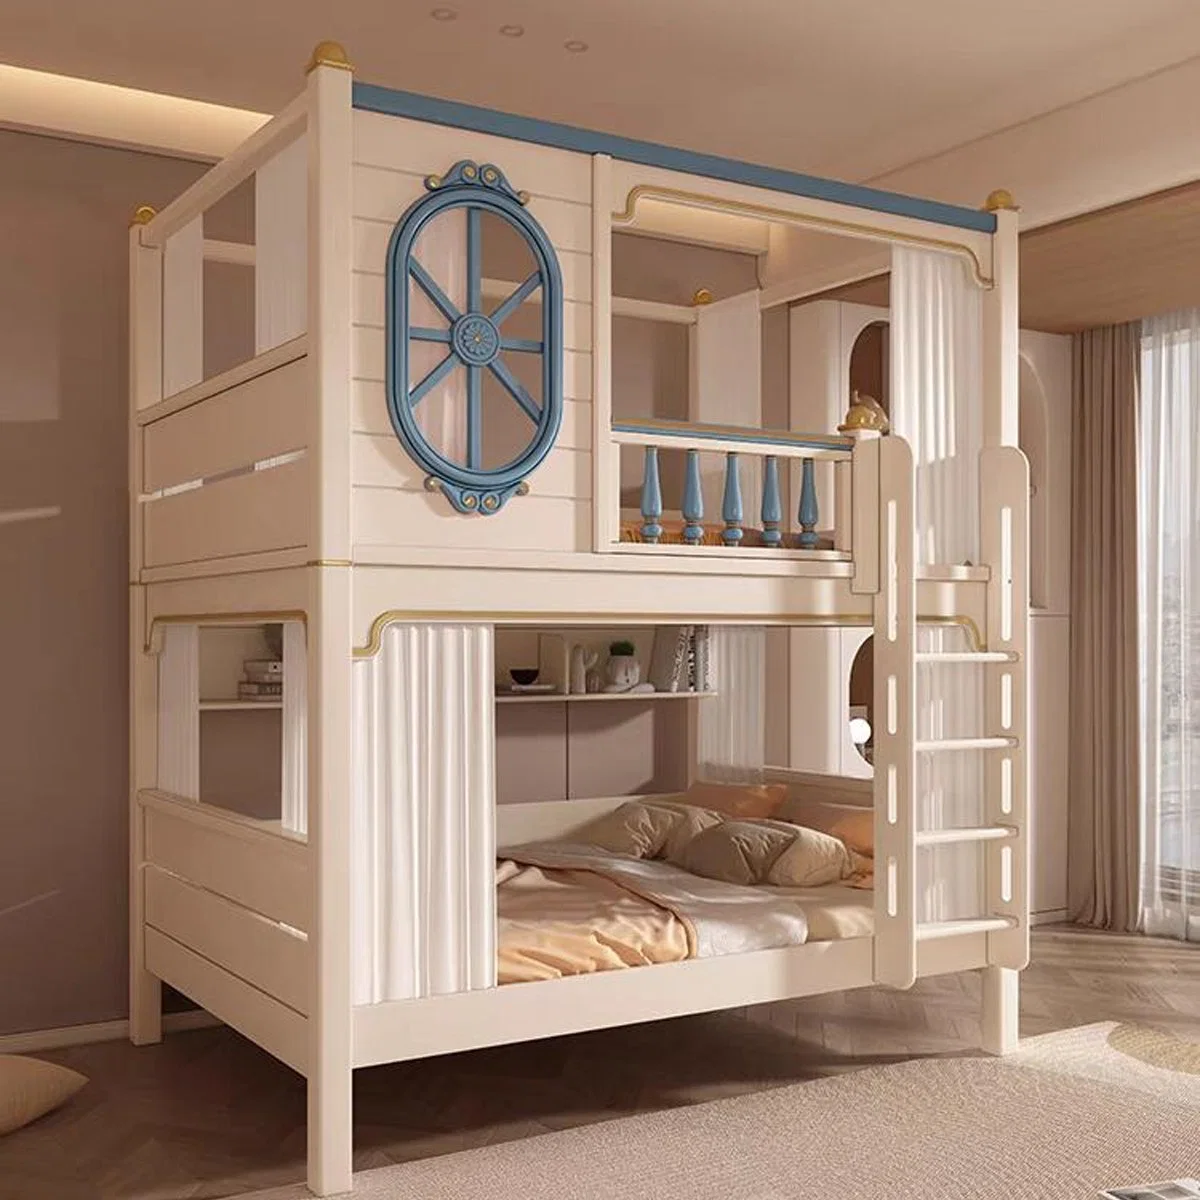 Modern Children Loft Bunk Bed Wood Combined Bunk Bed for Girls with Cabinet Storage Kids Bedroom Furniture Bunk Bed Slide